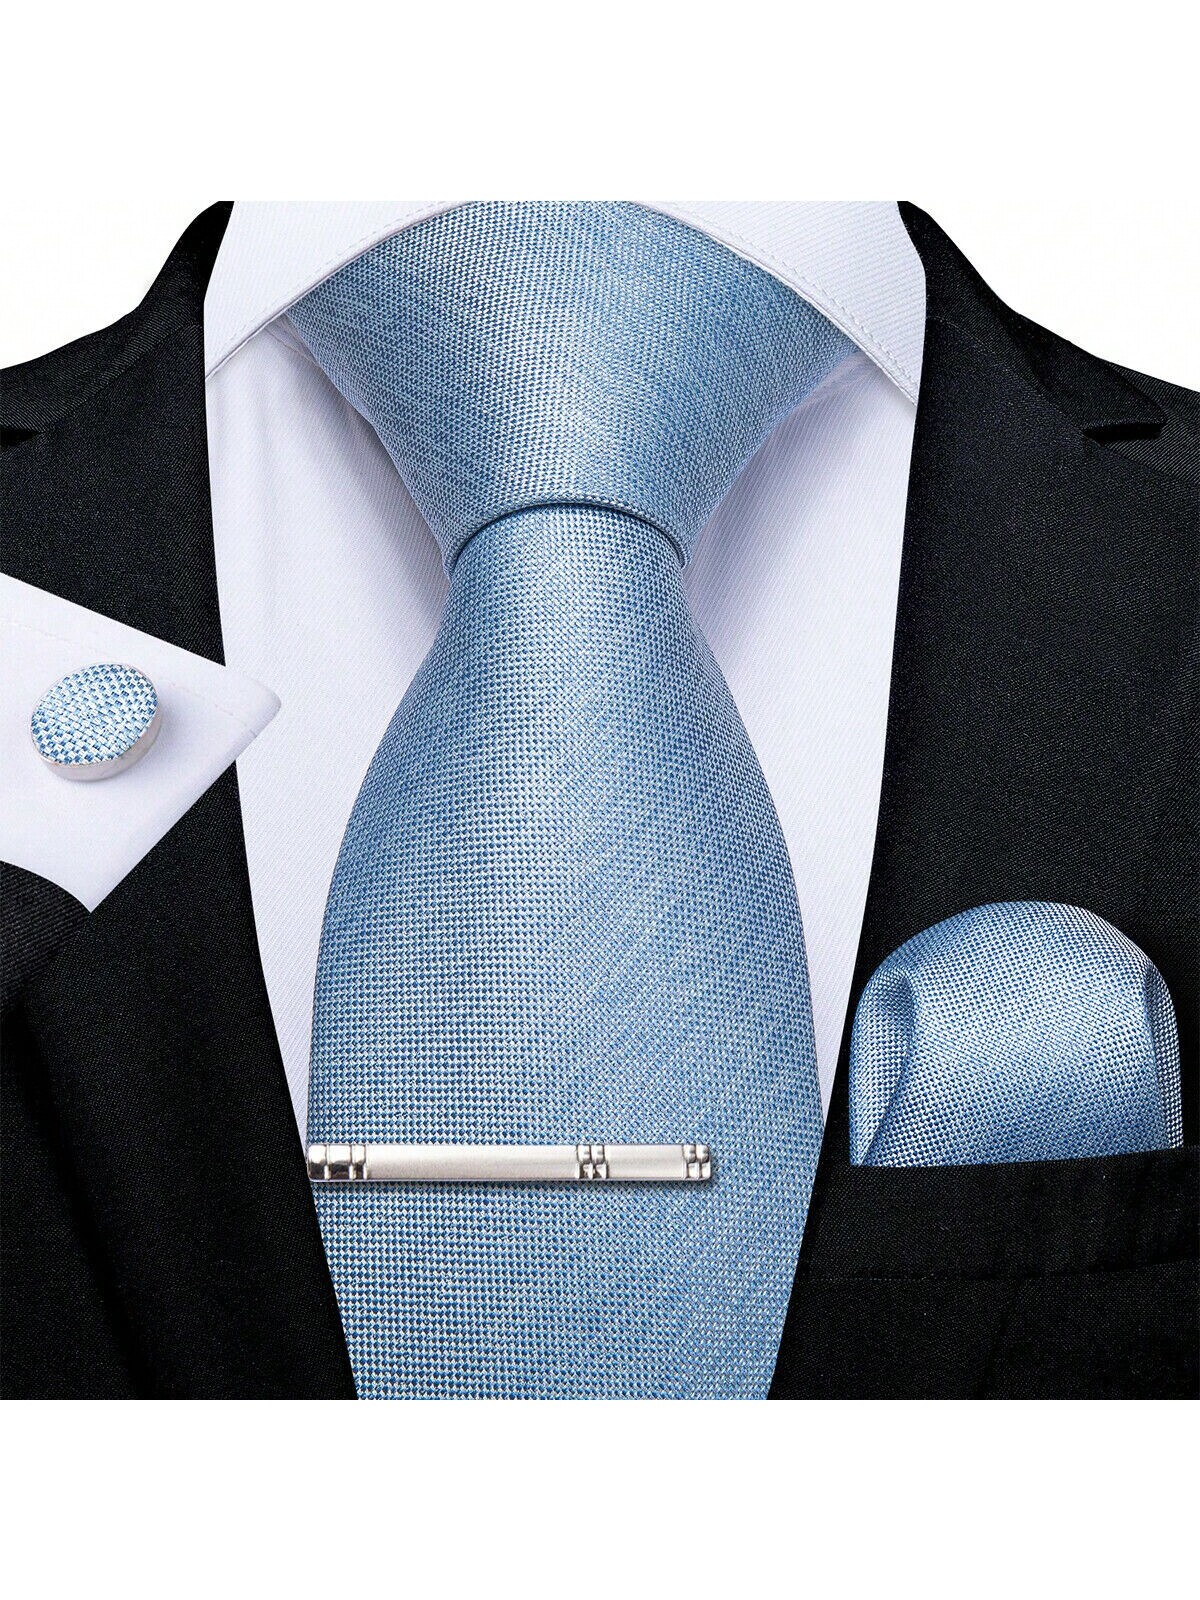 DiBanGu мужской галстук шелковый однотонный свадебный синий галстук карманные квадратные запонки клип набор Рождество 4 шт., голубые золотой полосатый темно синий мужской галстук шелковый жаккардовый галстук деловой галстук для свадебной вечеринки галстук платок галс